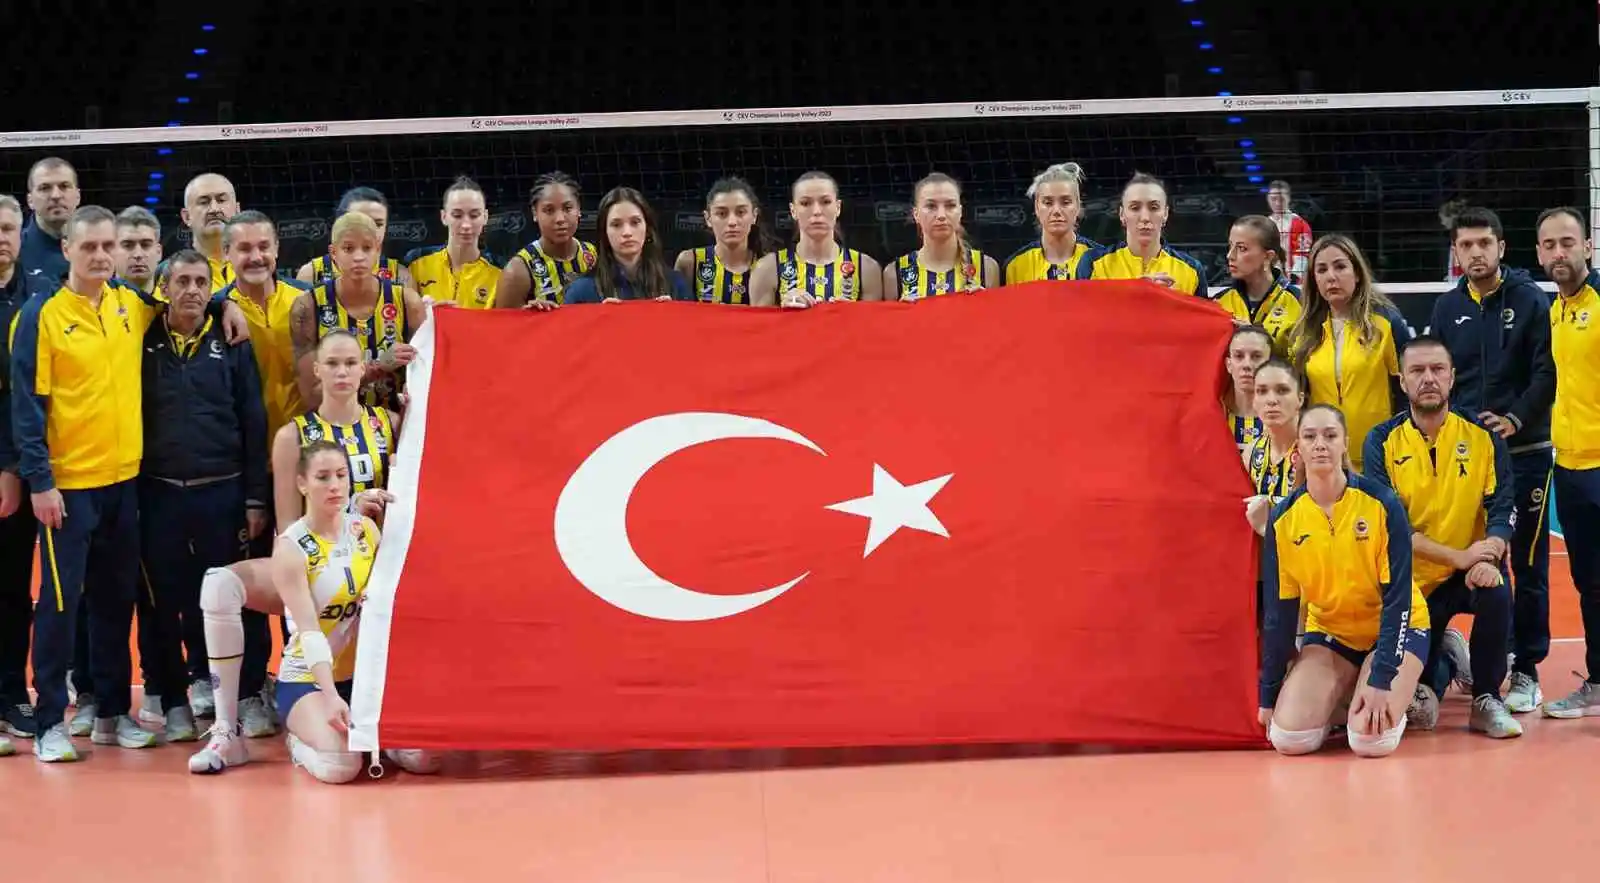 Fenerbahçe Opet, CEV Şampiyonlar Ligi'nde play-off etabına yükseldi
